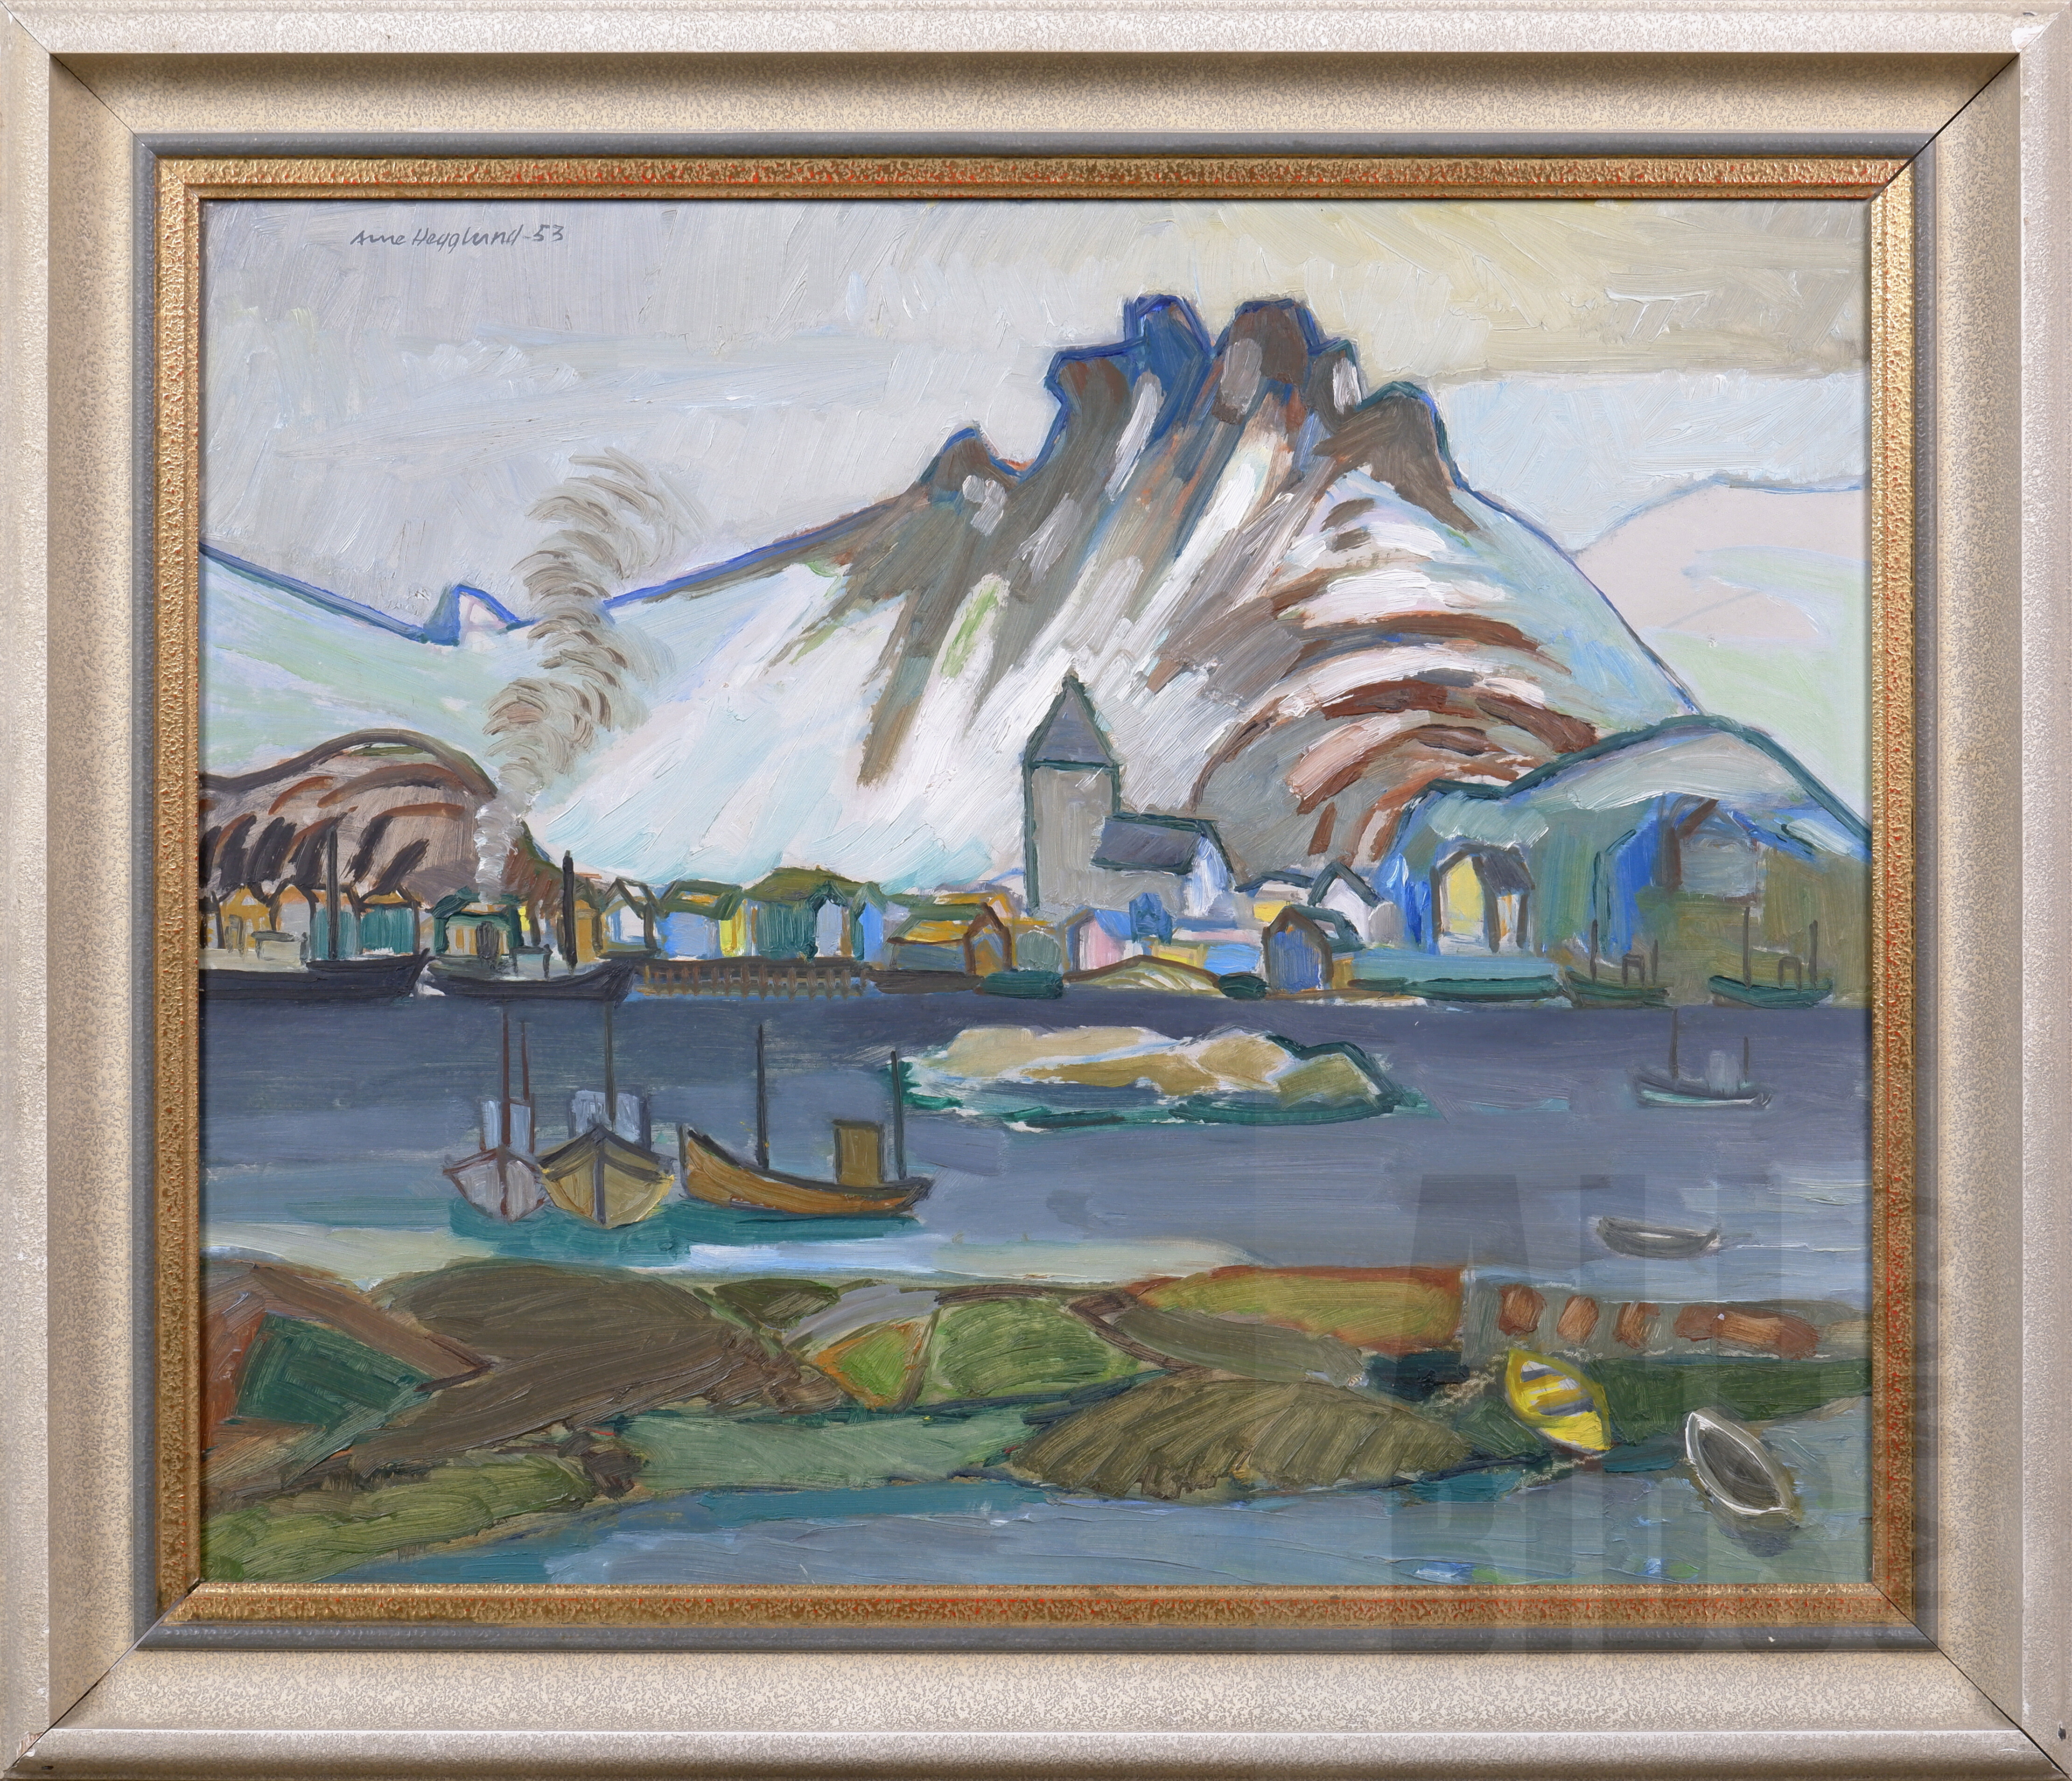 'Arne Hegglund (1915-2009, Norwegian), From Svolvaer 1953, Oil on Panel, 57 x 66 cm (incl. frame) '